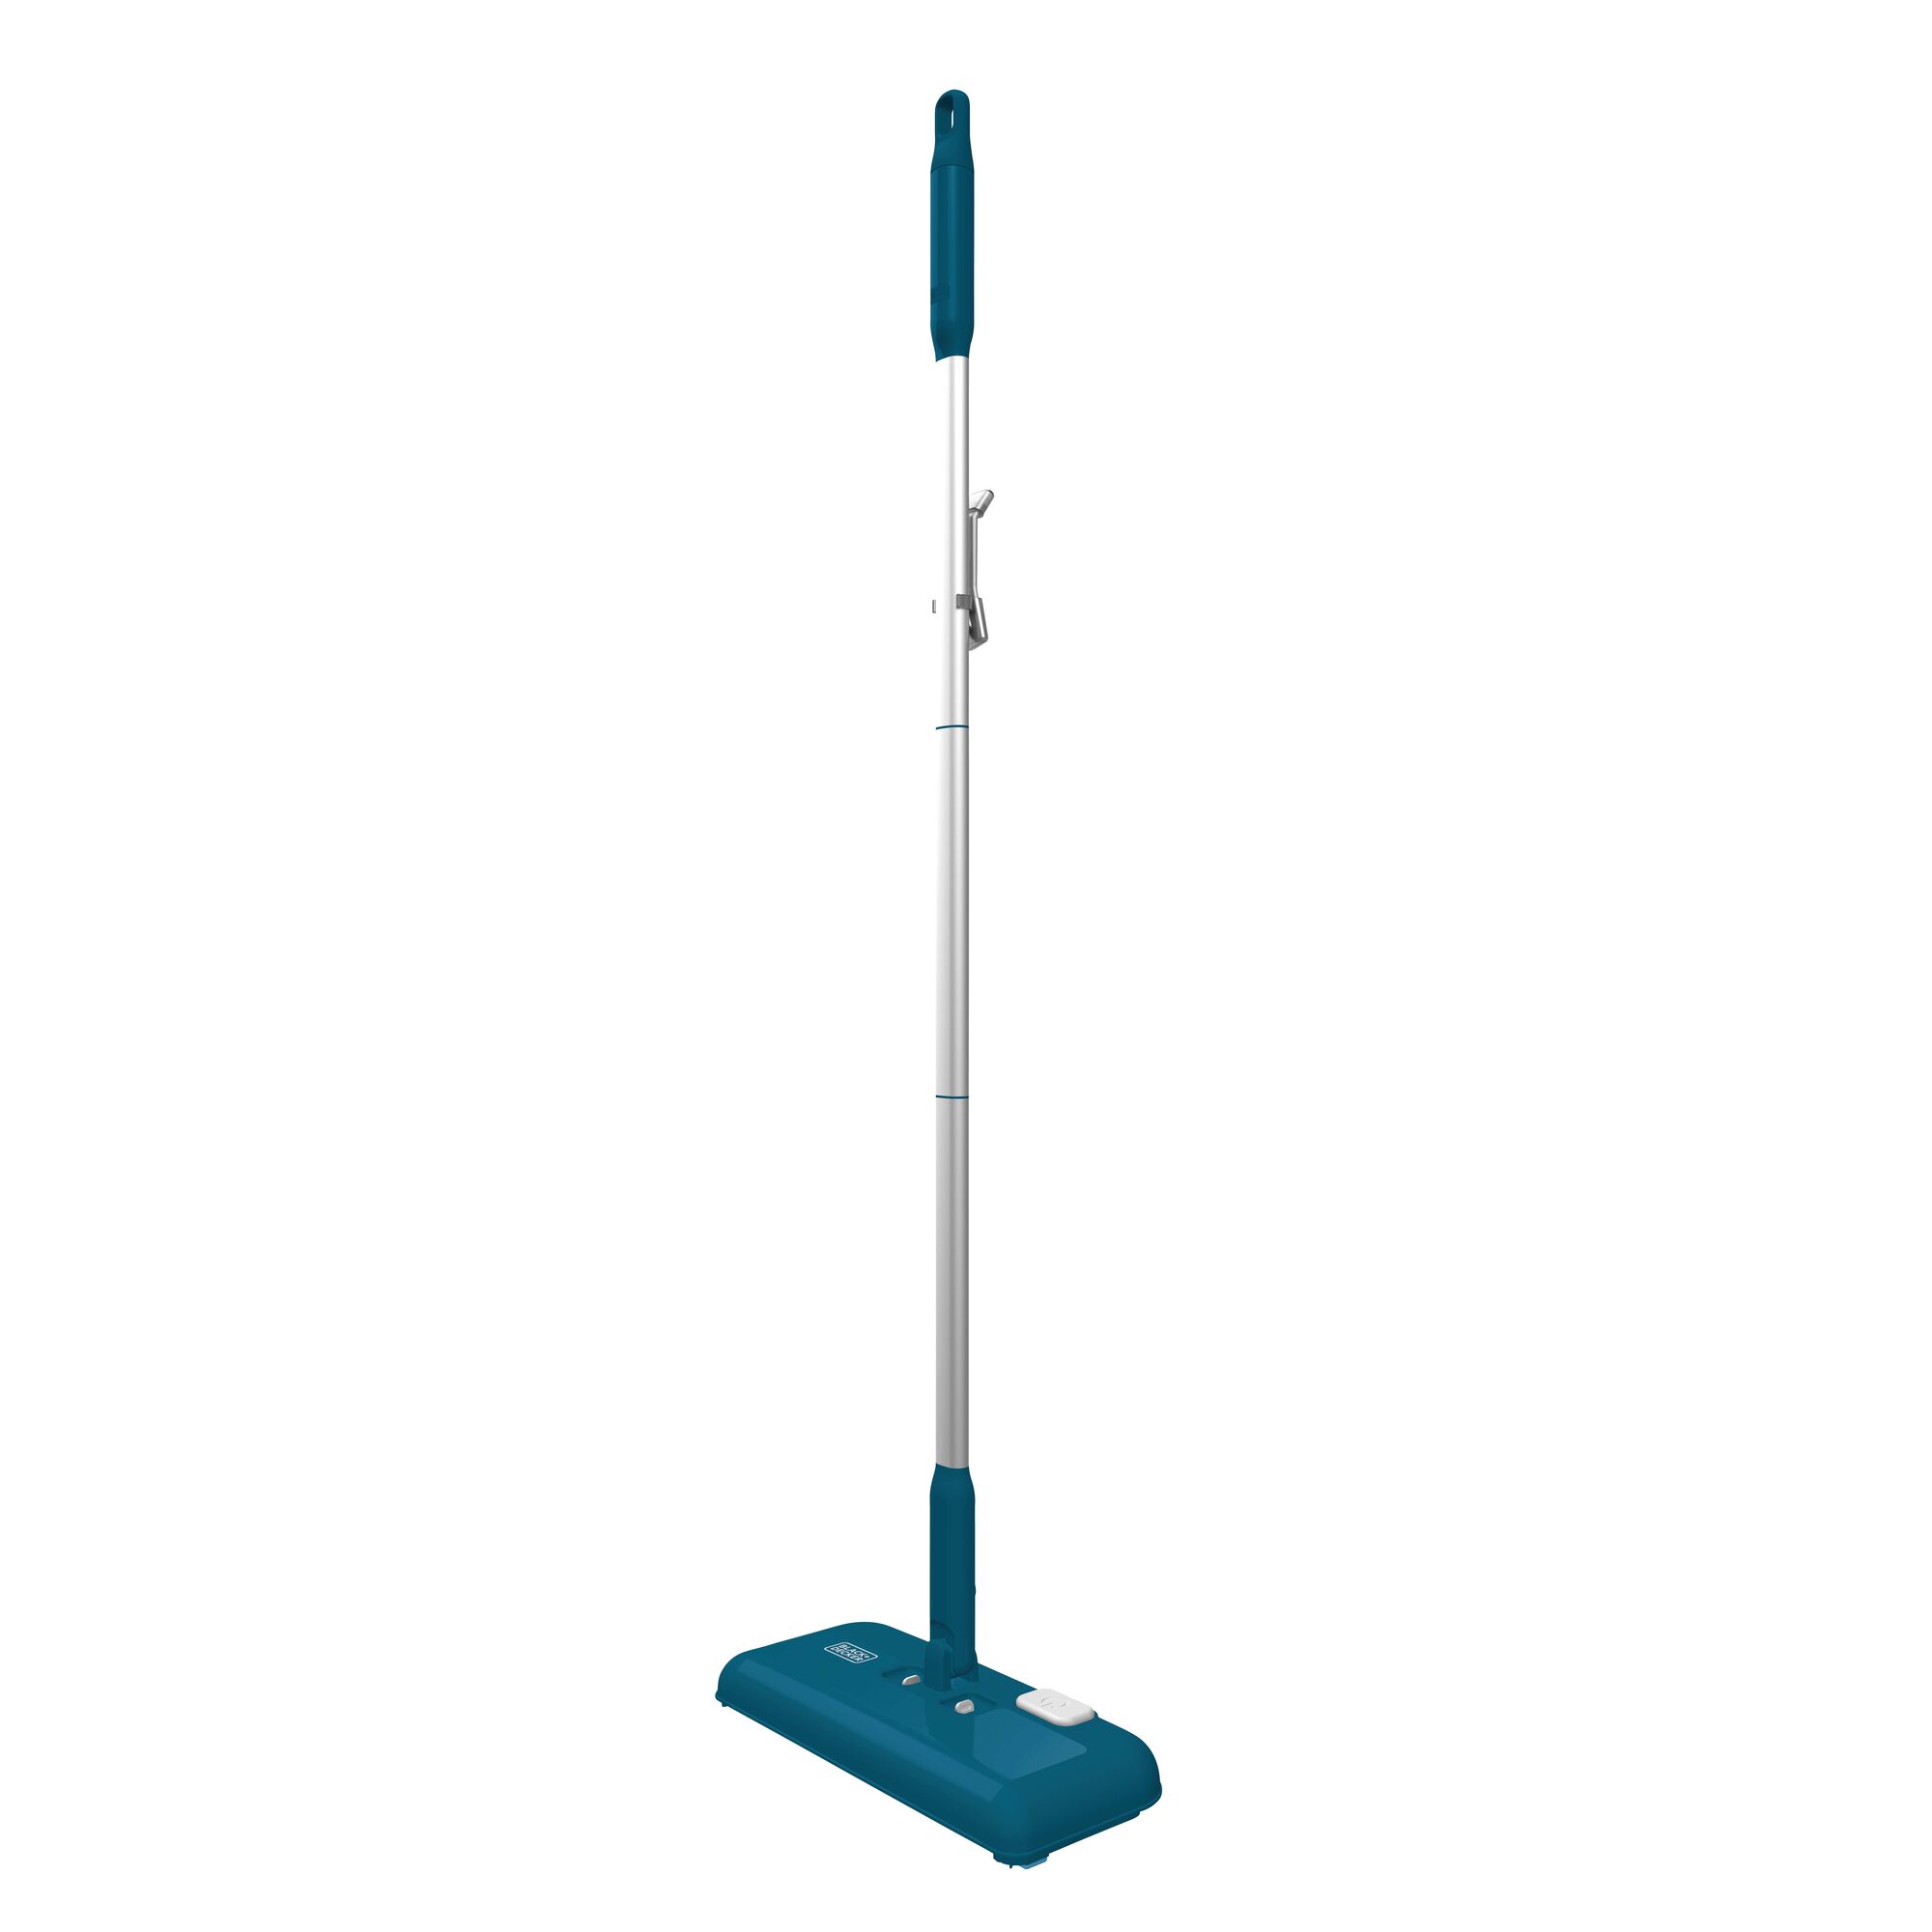 Profile of powered floor sweeper cosair.